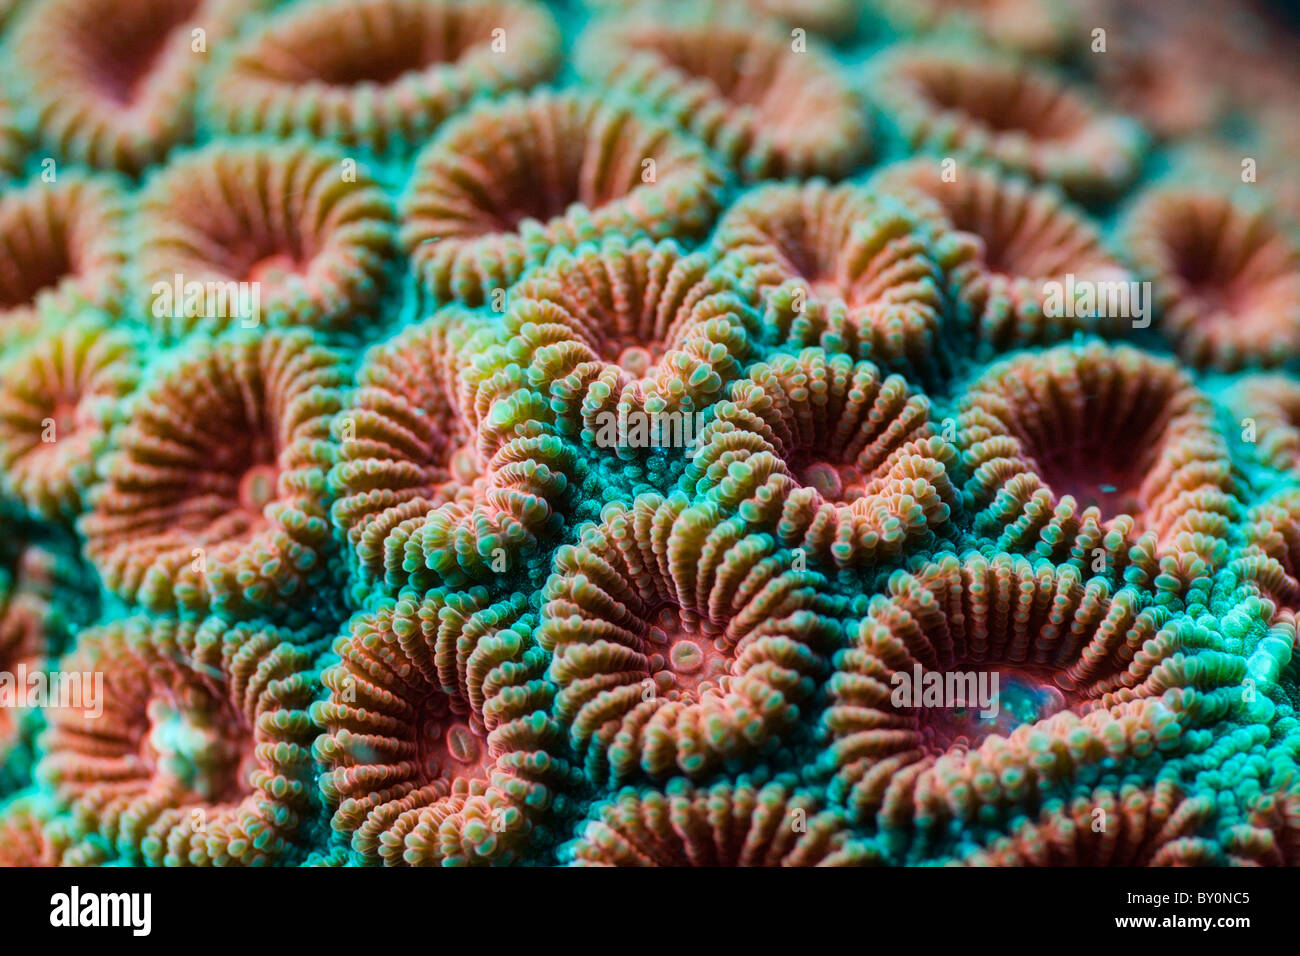 Fluorescenti di corallo duro, Diploastrea heliopora, Alam Batu, Bali, Indonesia Foto Stock